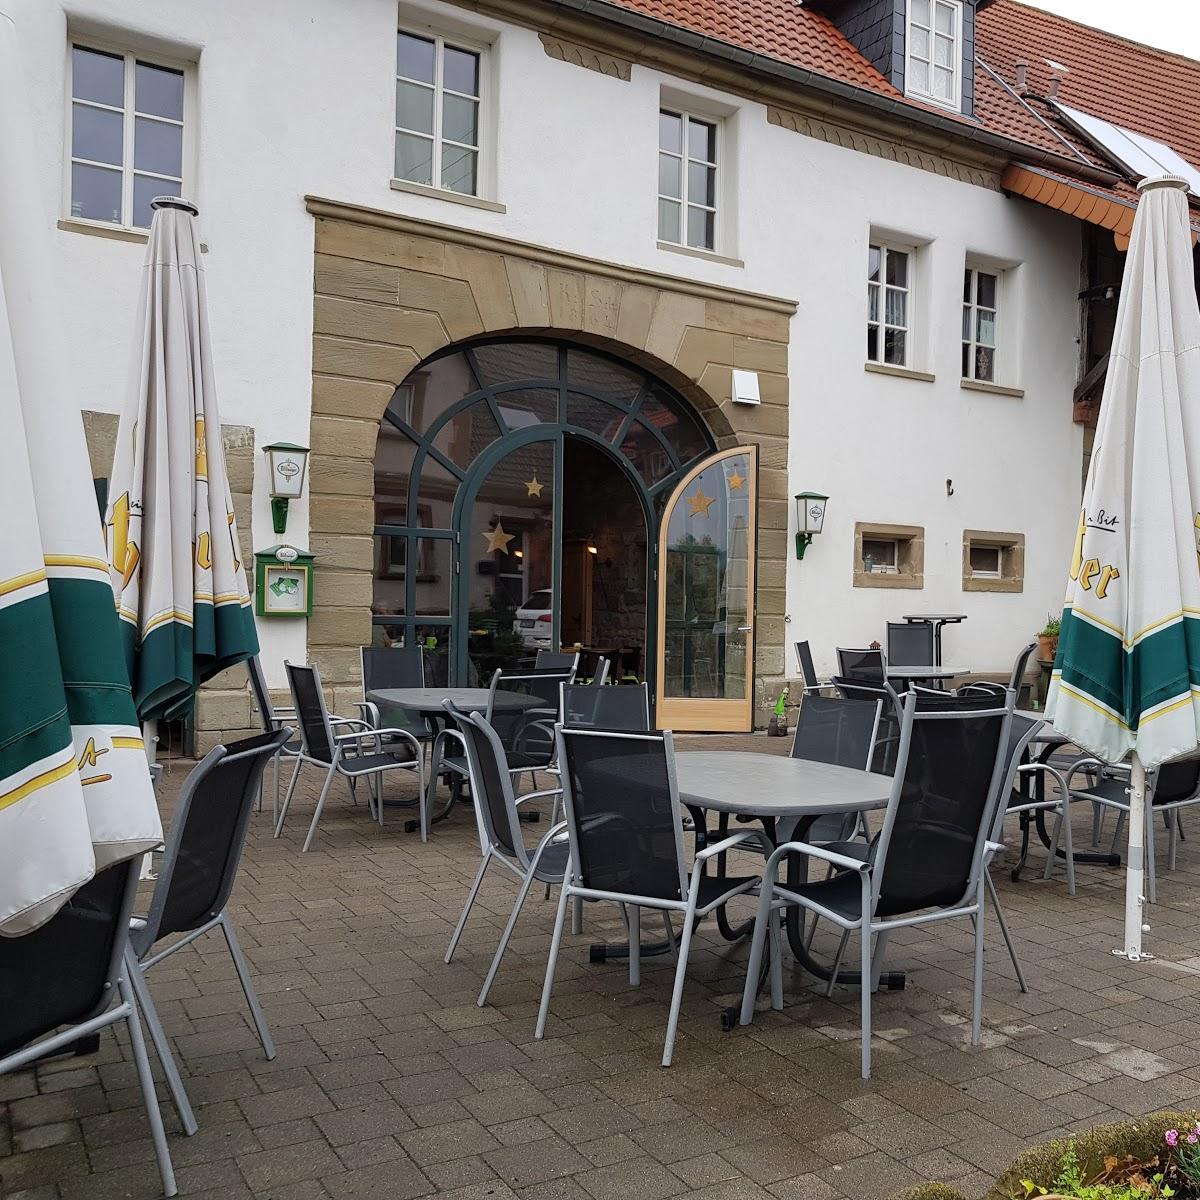 Restaurant "Café Zur Scheune" in Rehweiler